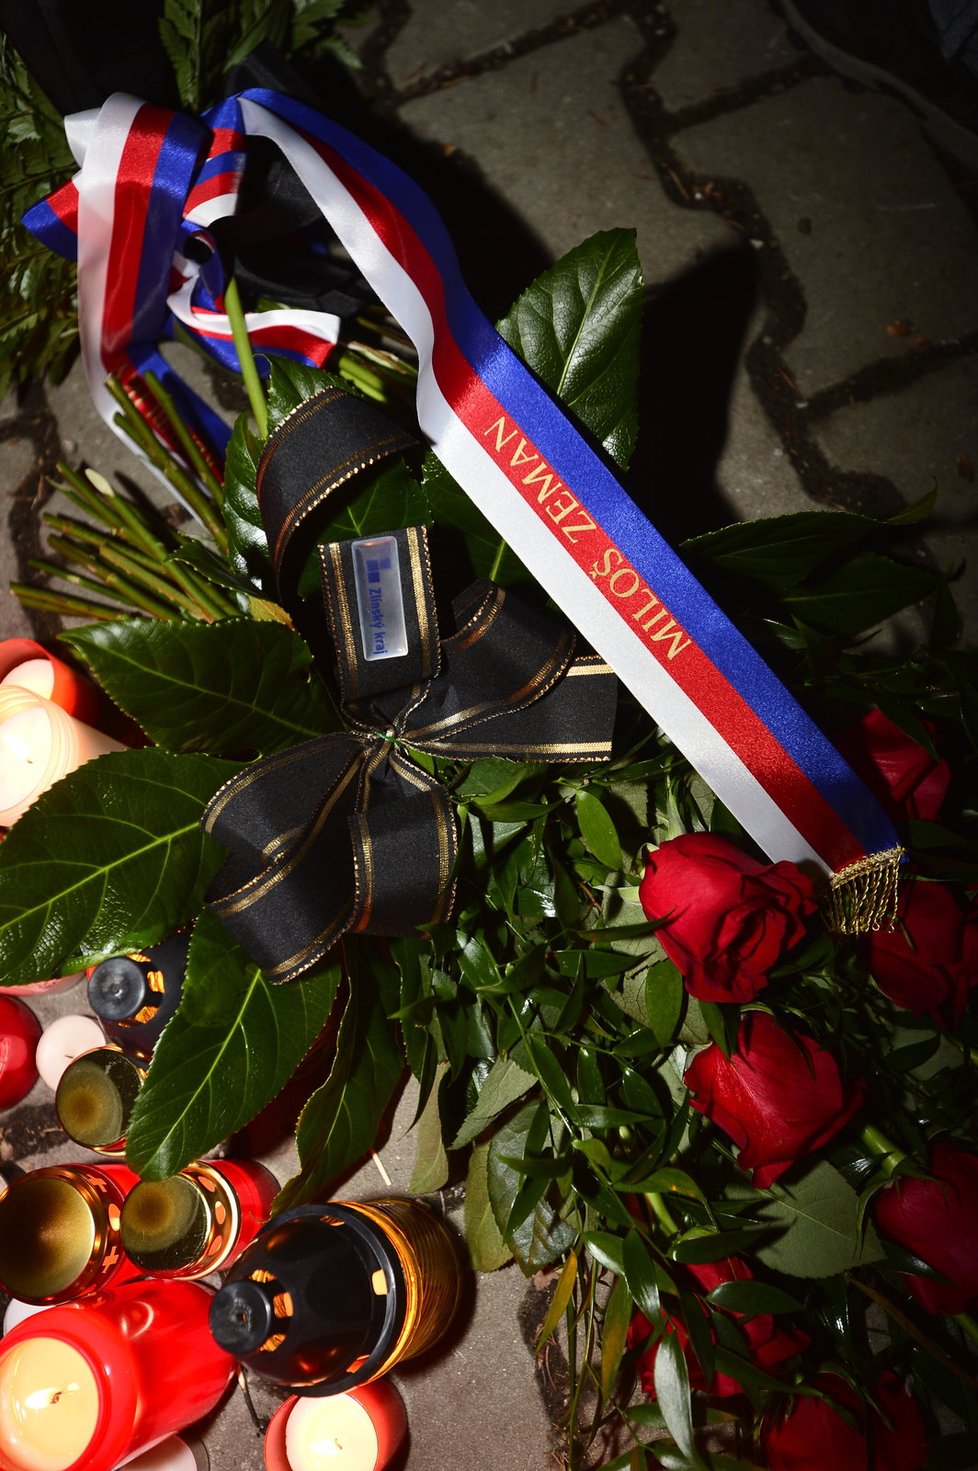 Prezident Miloš Zeman se v Uherském Brodě poklonil památce obětí střelby, na pietní místo přinesl kytici